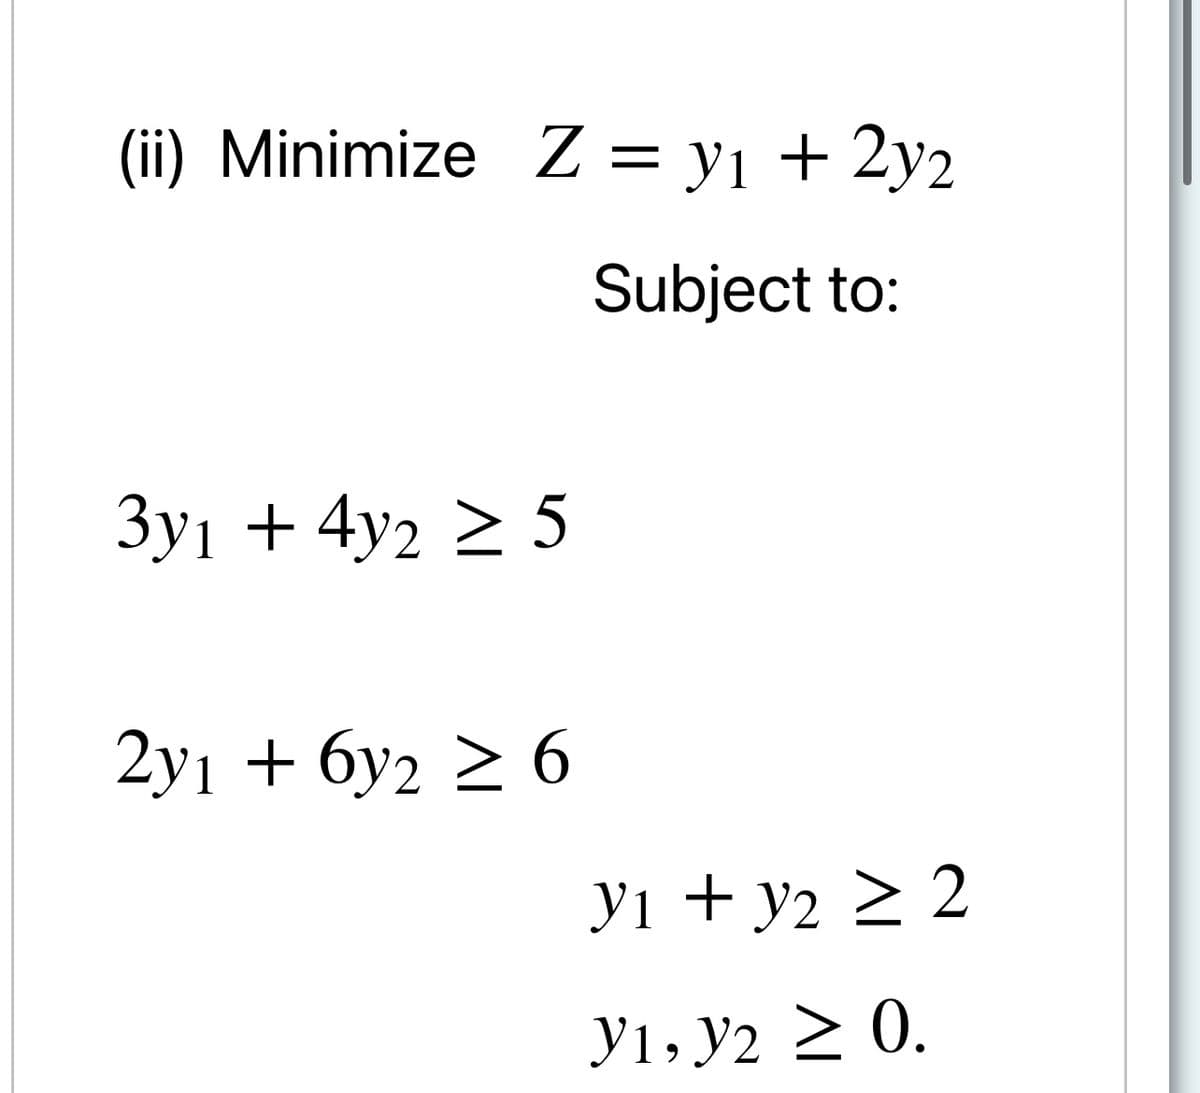 (ї) Minimize Z3D yј + 2у2
Subject to:
Зу1 + 4у2 > 5
2у1 + бу2 2 6
У1 + у2 2 2
Ут, У2 2 0.
